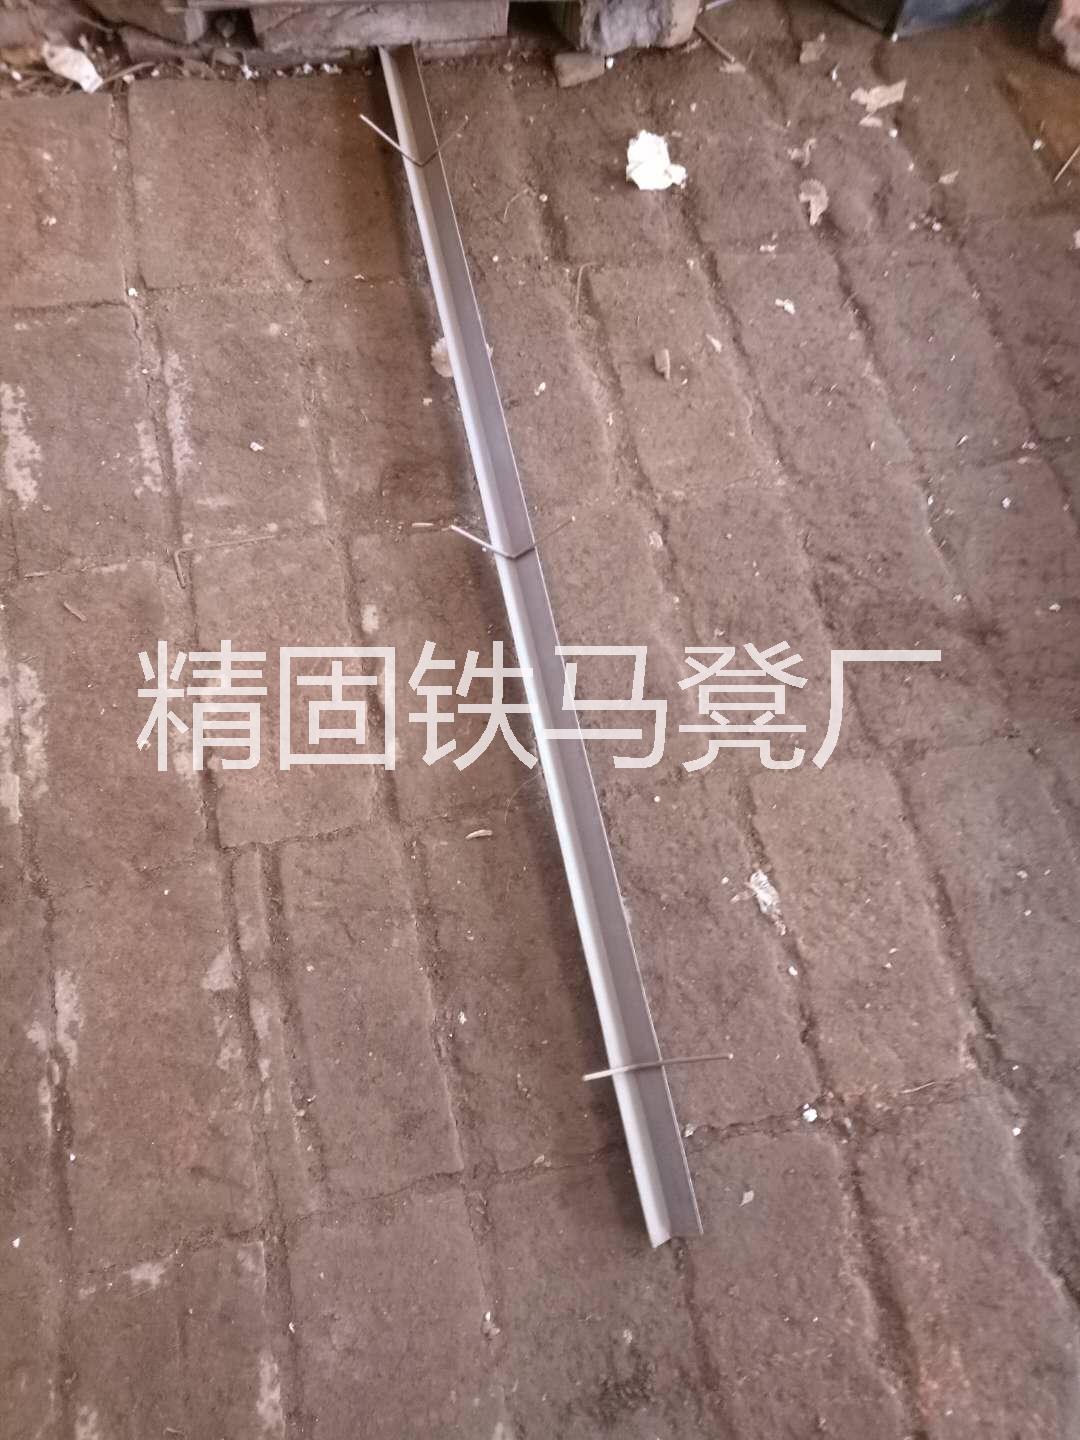 北京铁马凳 北京楼梯护角 北京环保建筑建材  北京铁马凳批发 铁马凳 环保建材 铁马凳批发